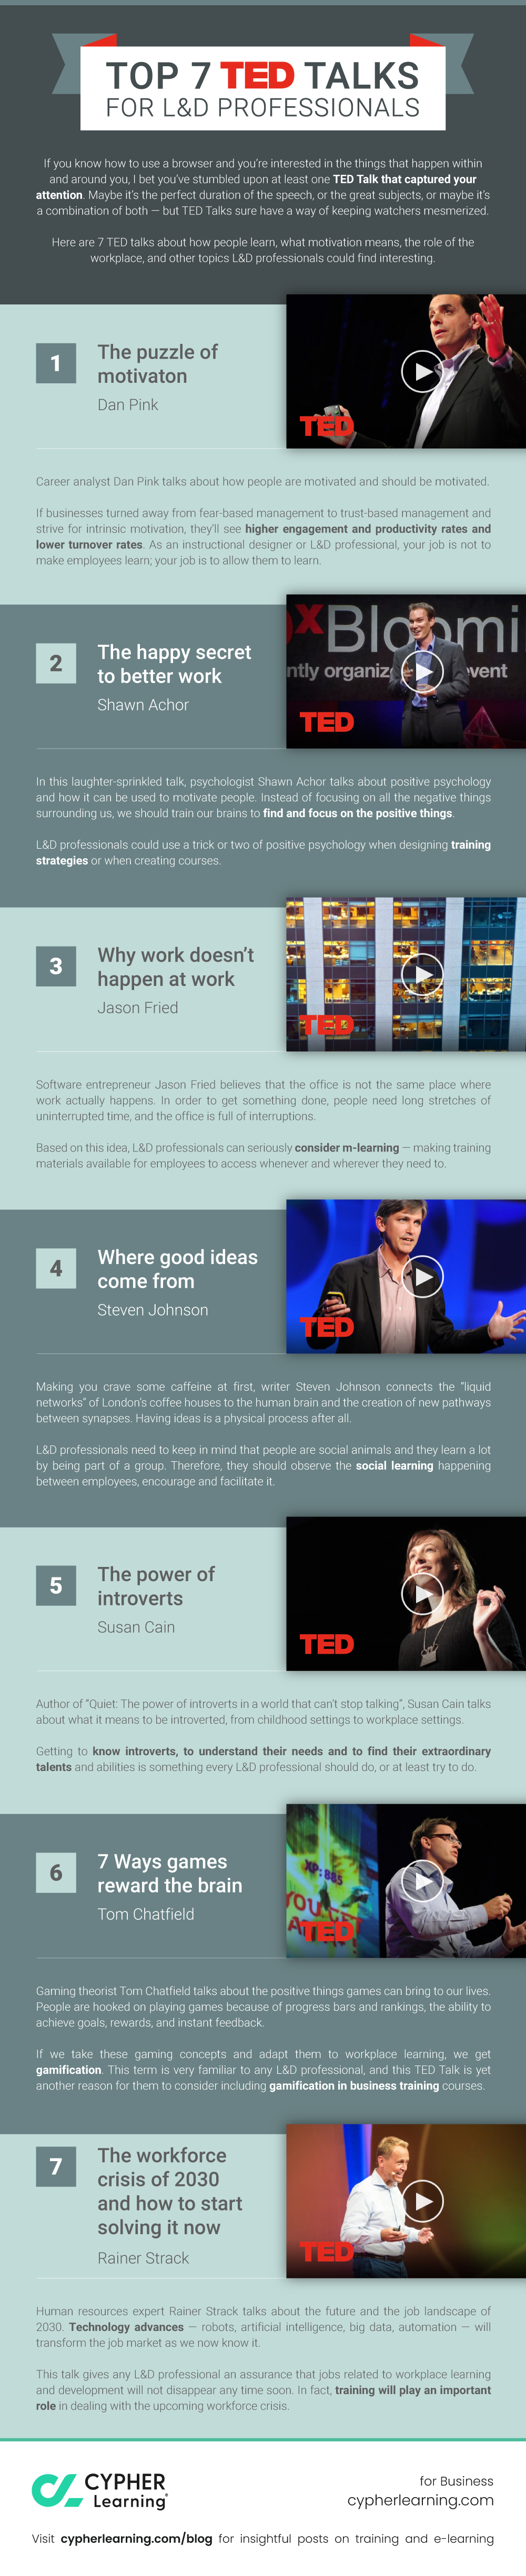 Top 7 TED talks for L&D professionals